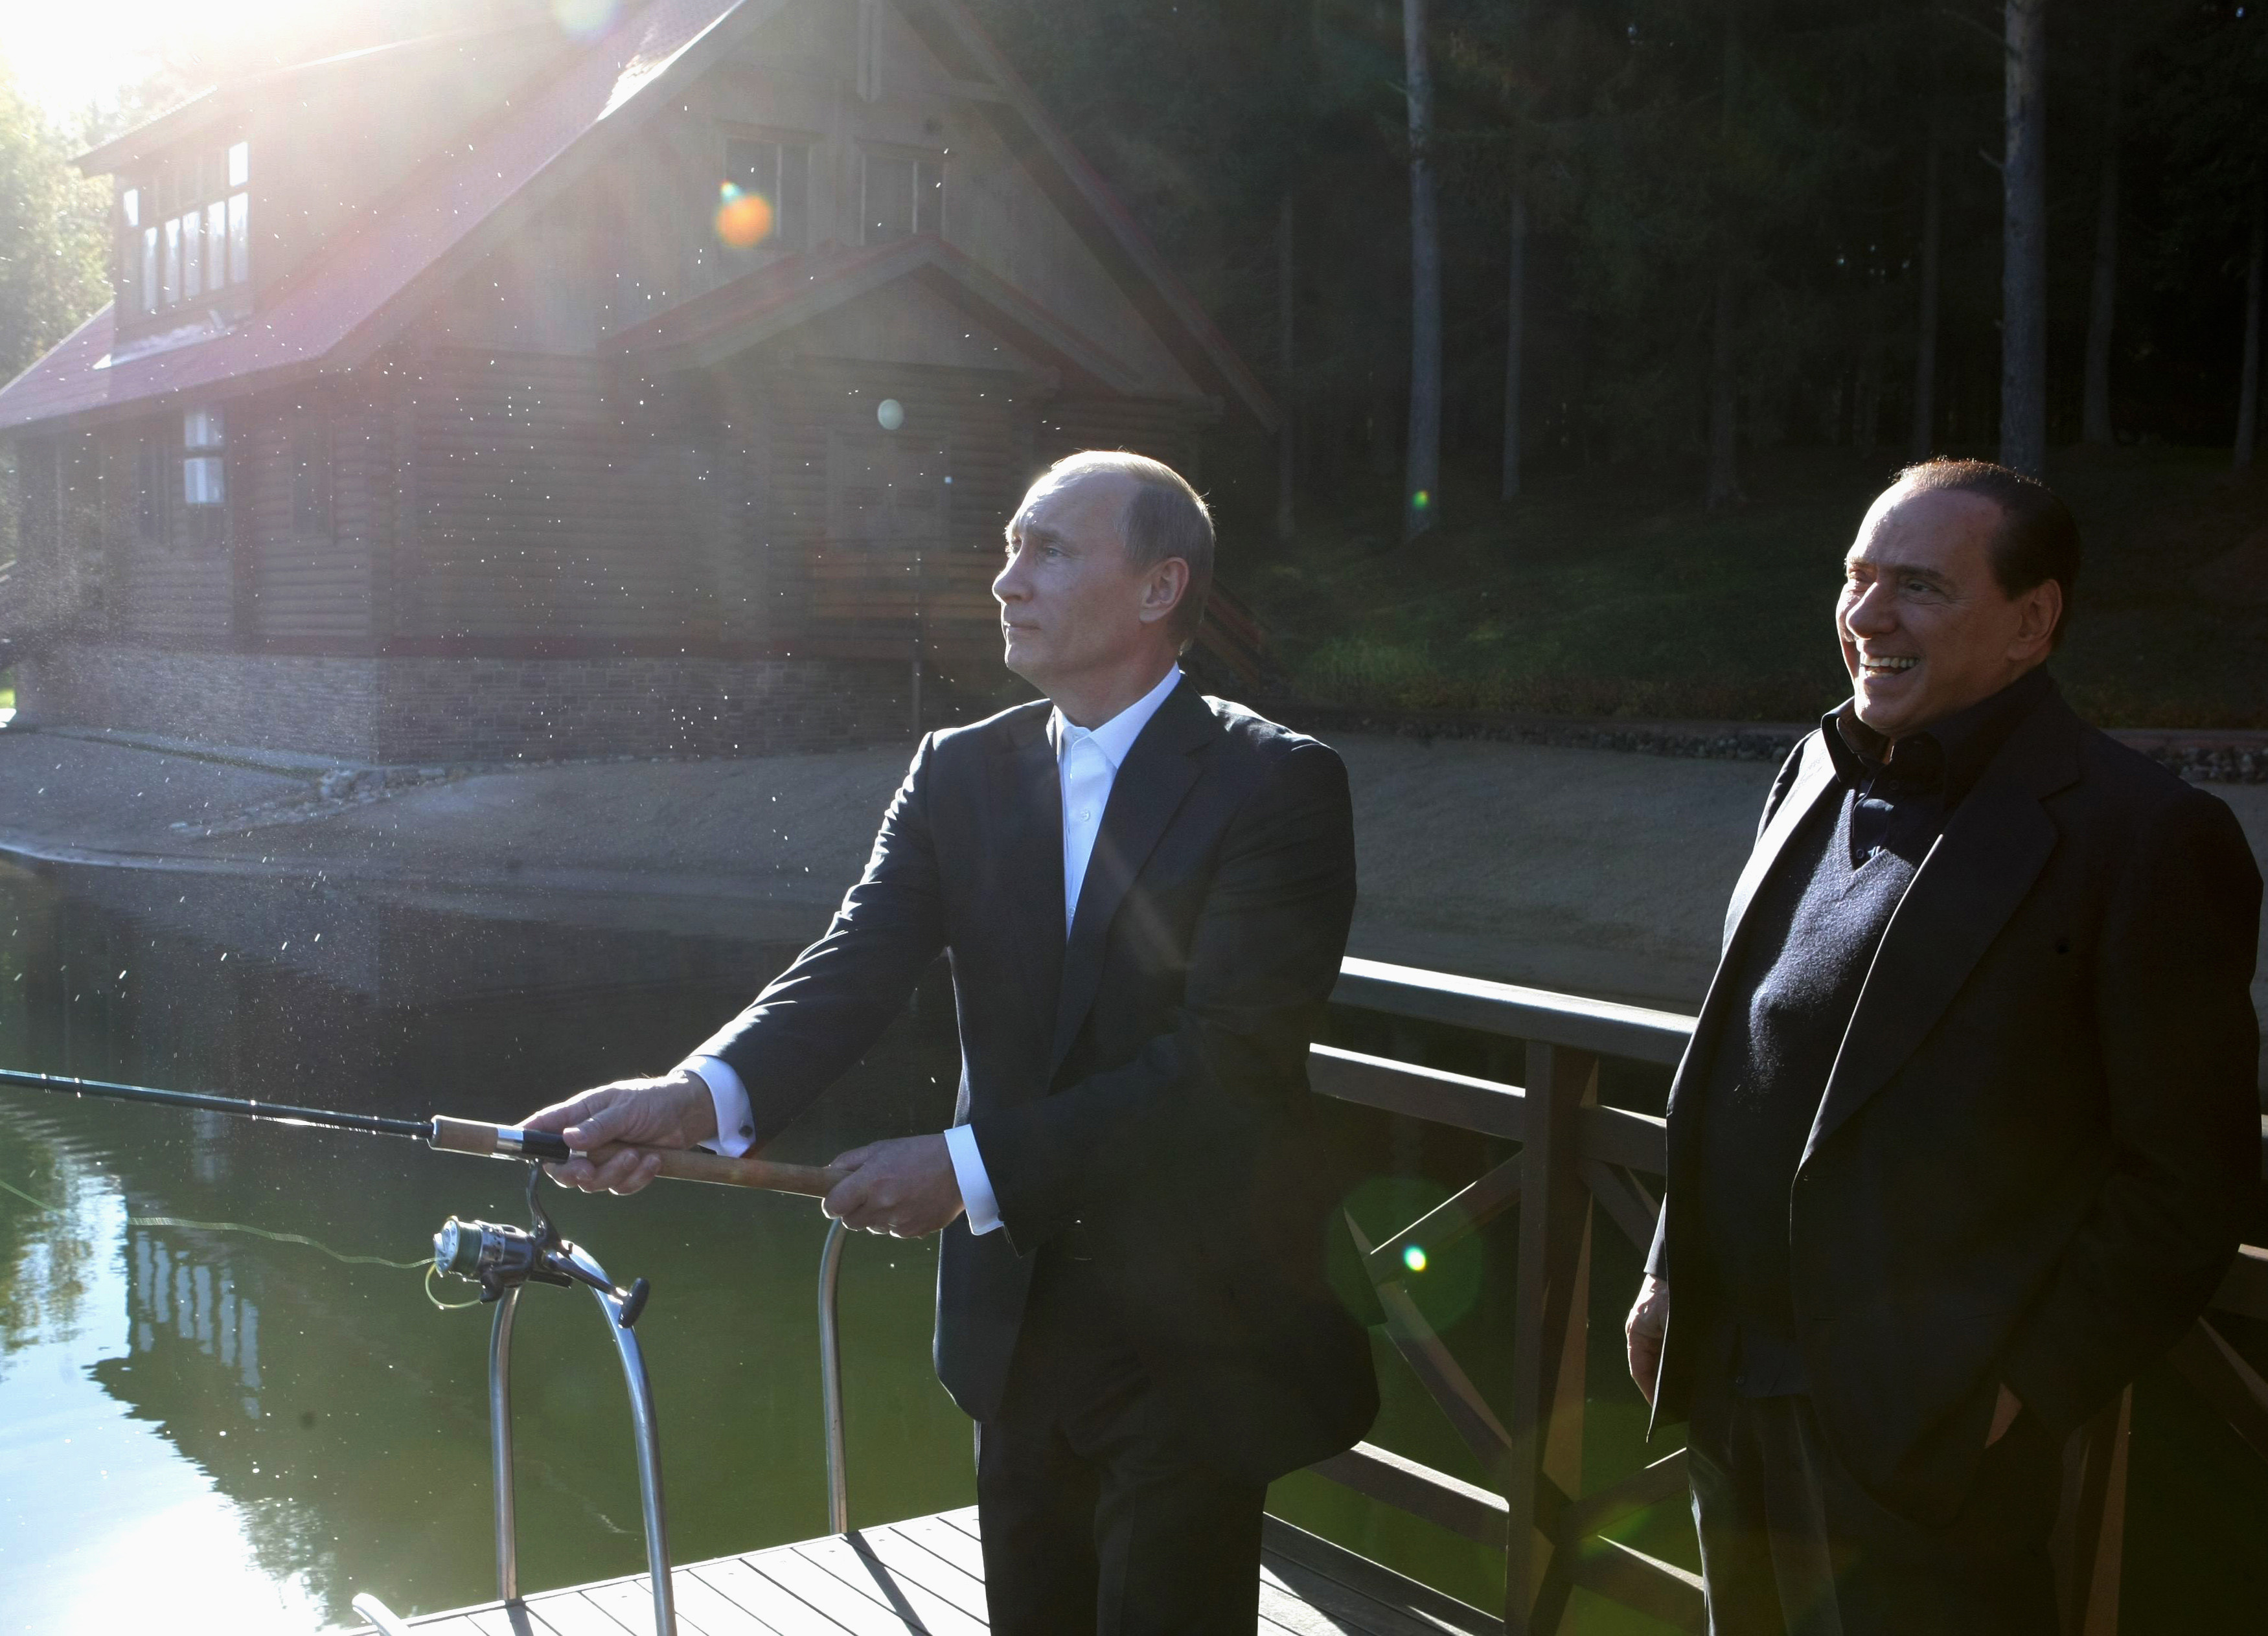 Берлускони и Путин